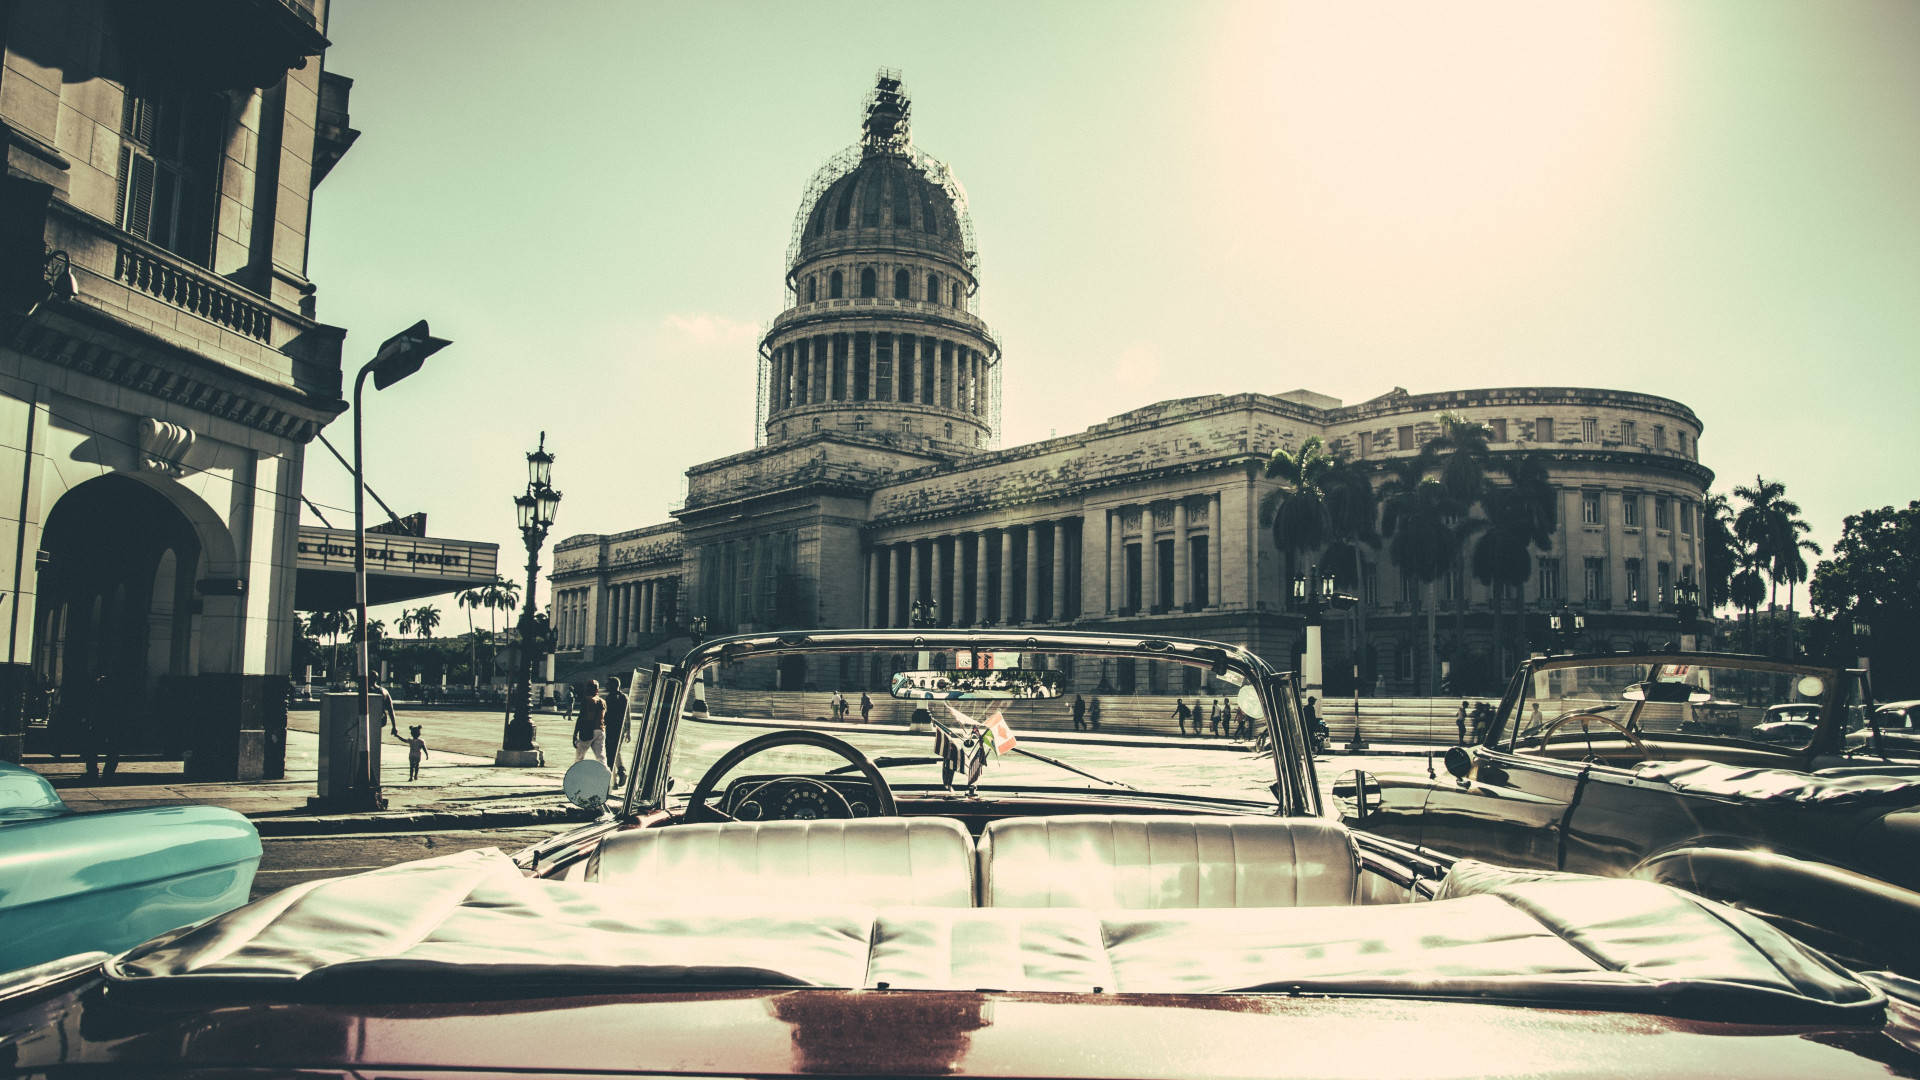 Havanael Capitolio Majestic Kan Bli Ett Fantastiskt Val Av Bakgrundsbild För Din Dator Eller Mobiltelefon. Wallpaper